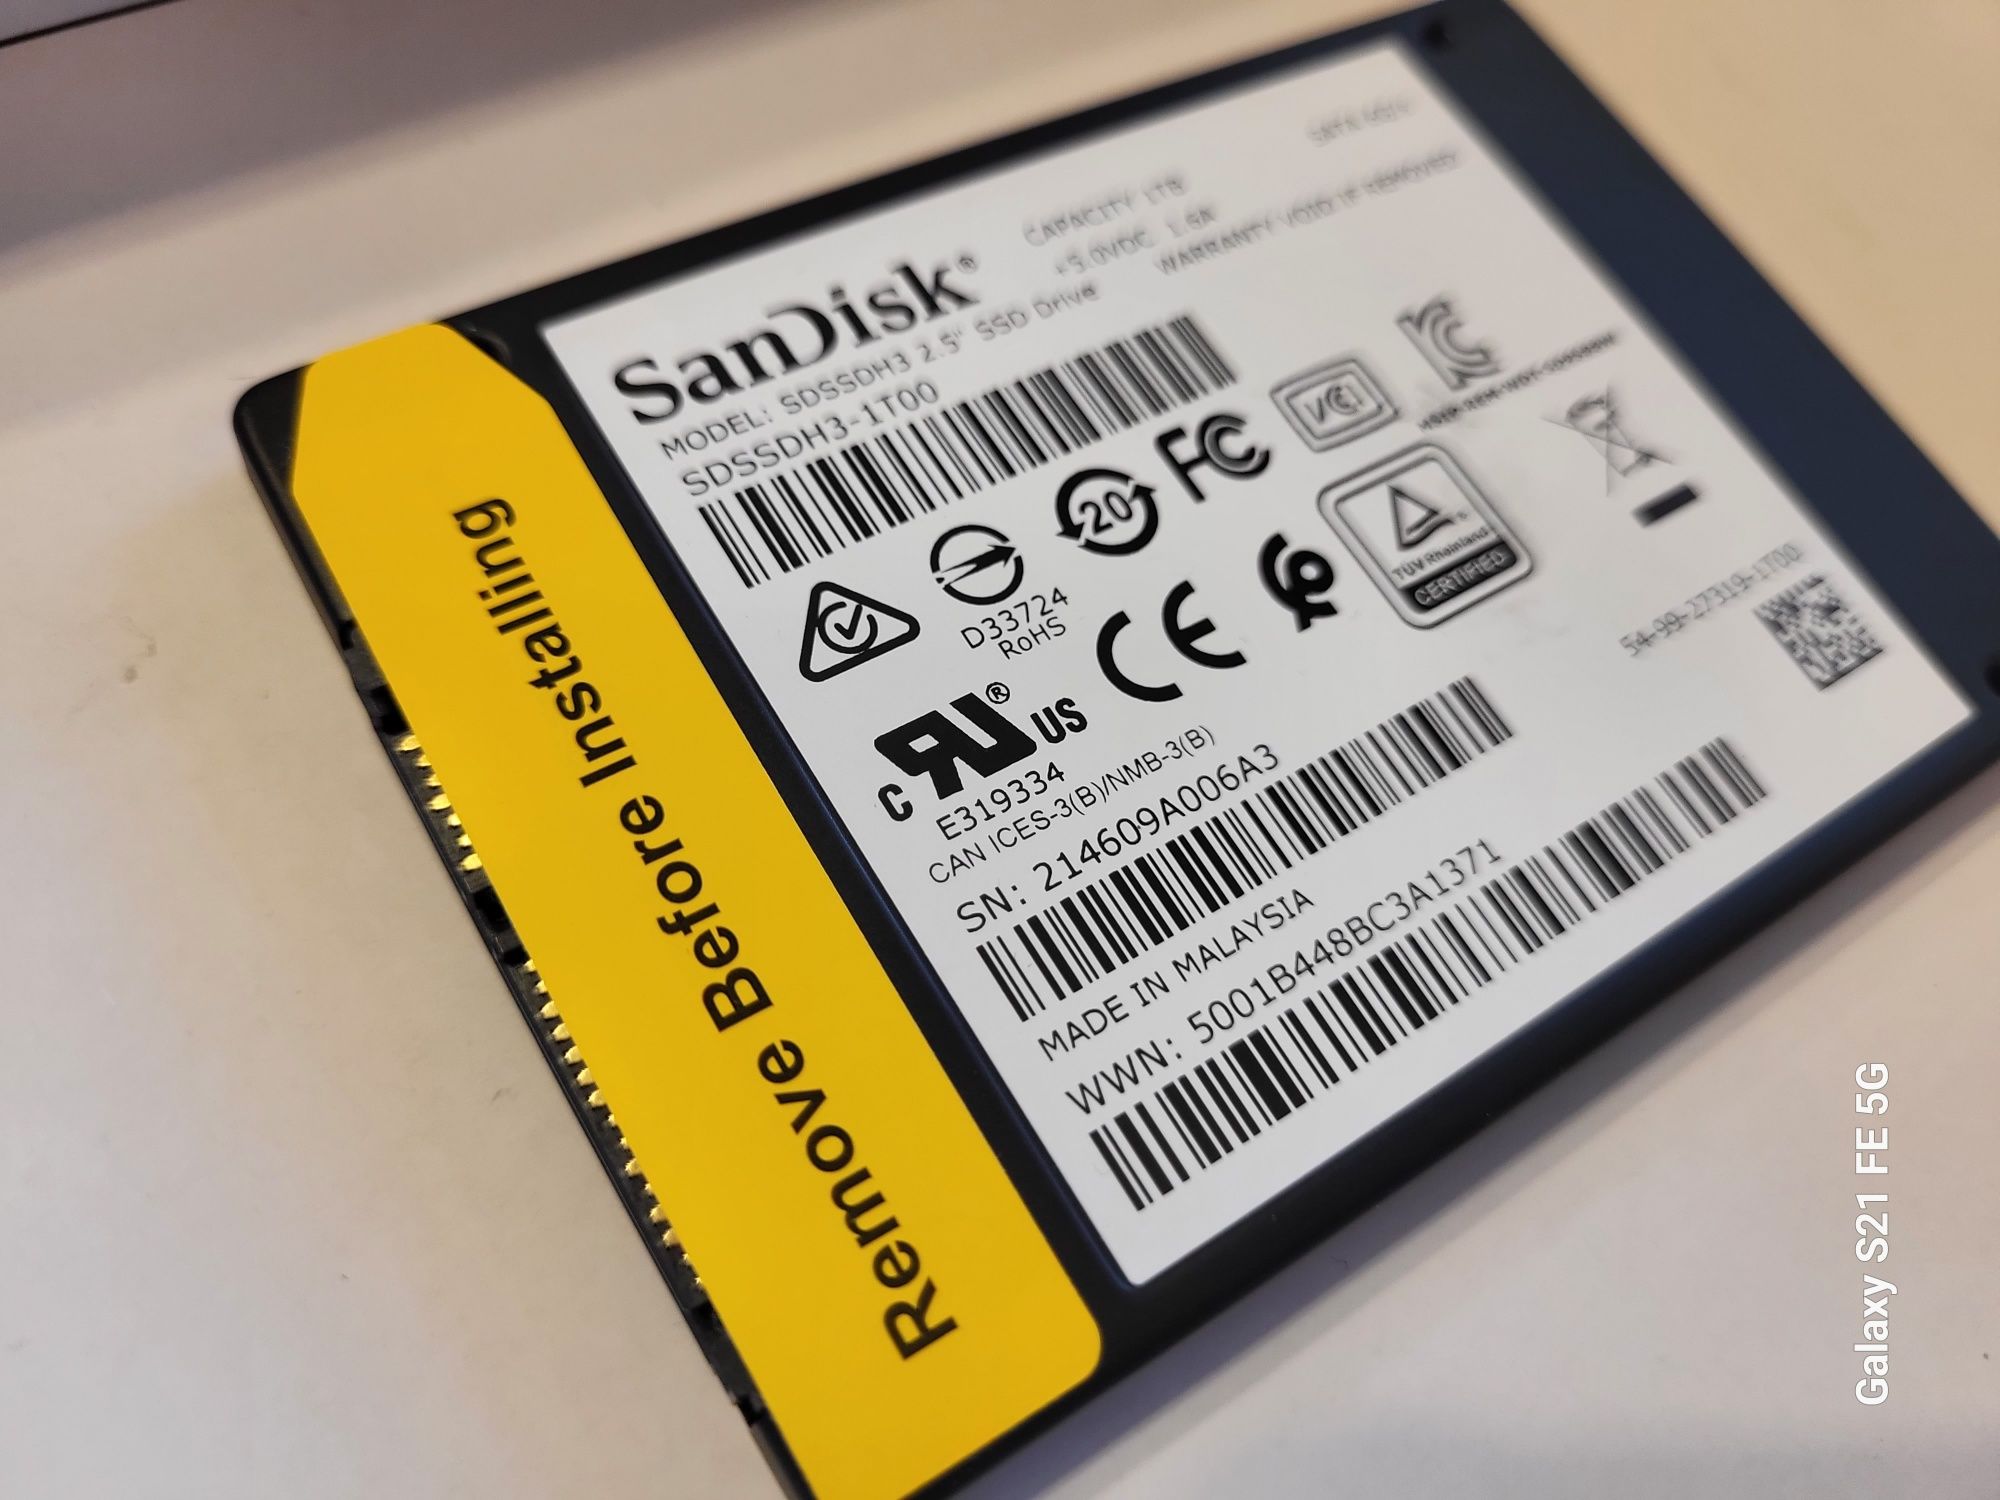 Nowy SanDisk 3D SSD 1tb Sata 6Gb/s Dysk